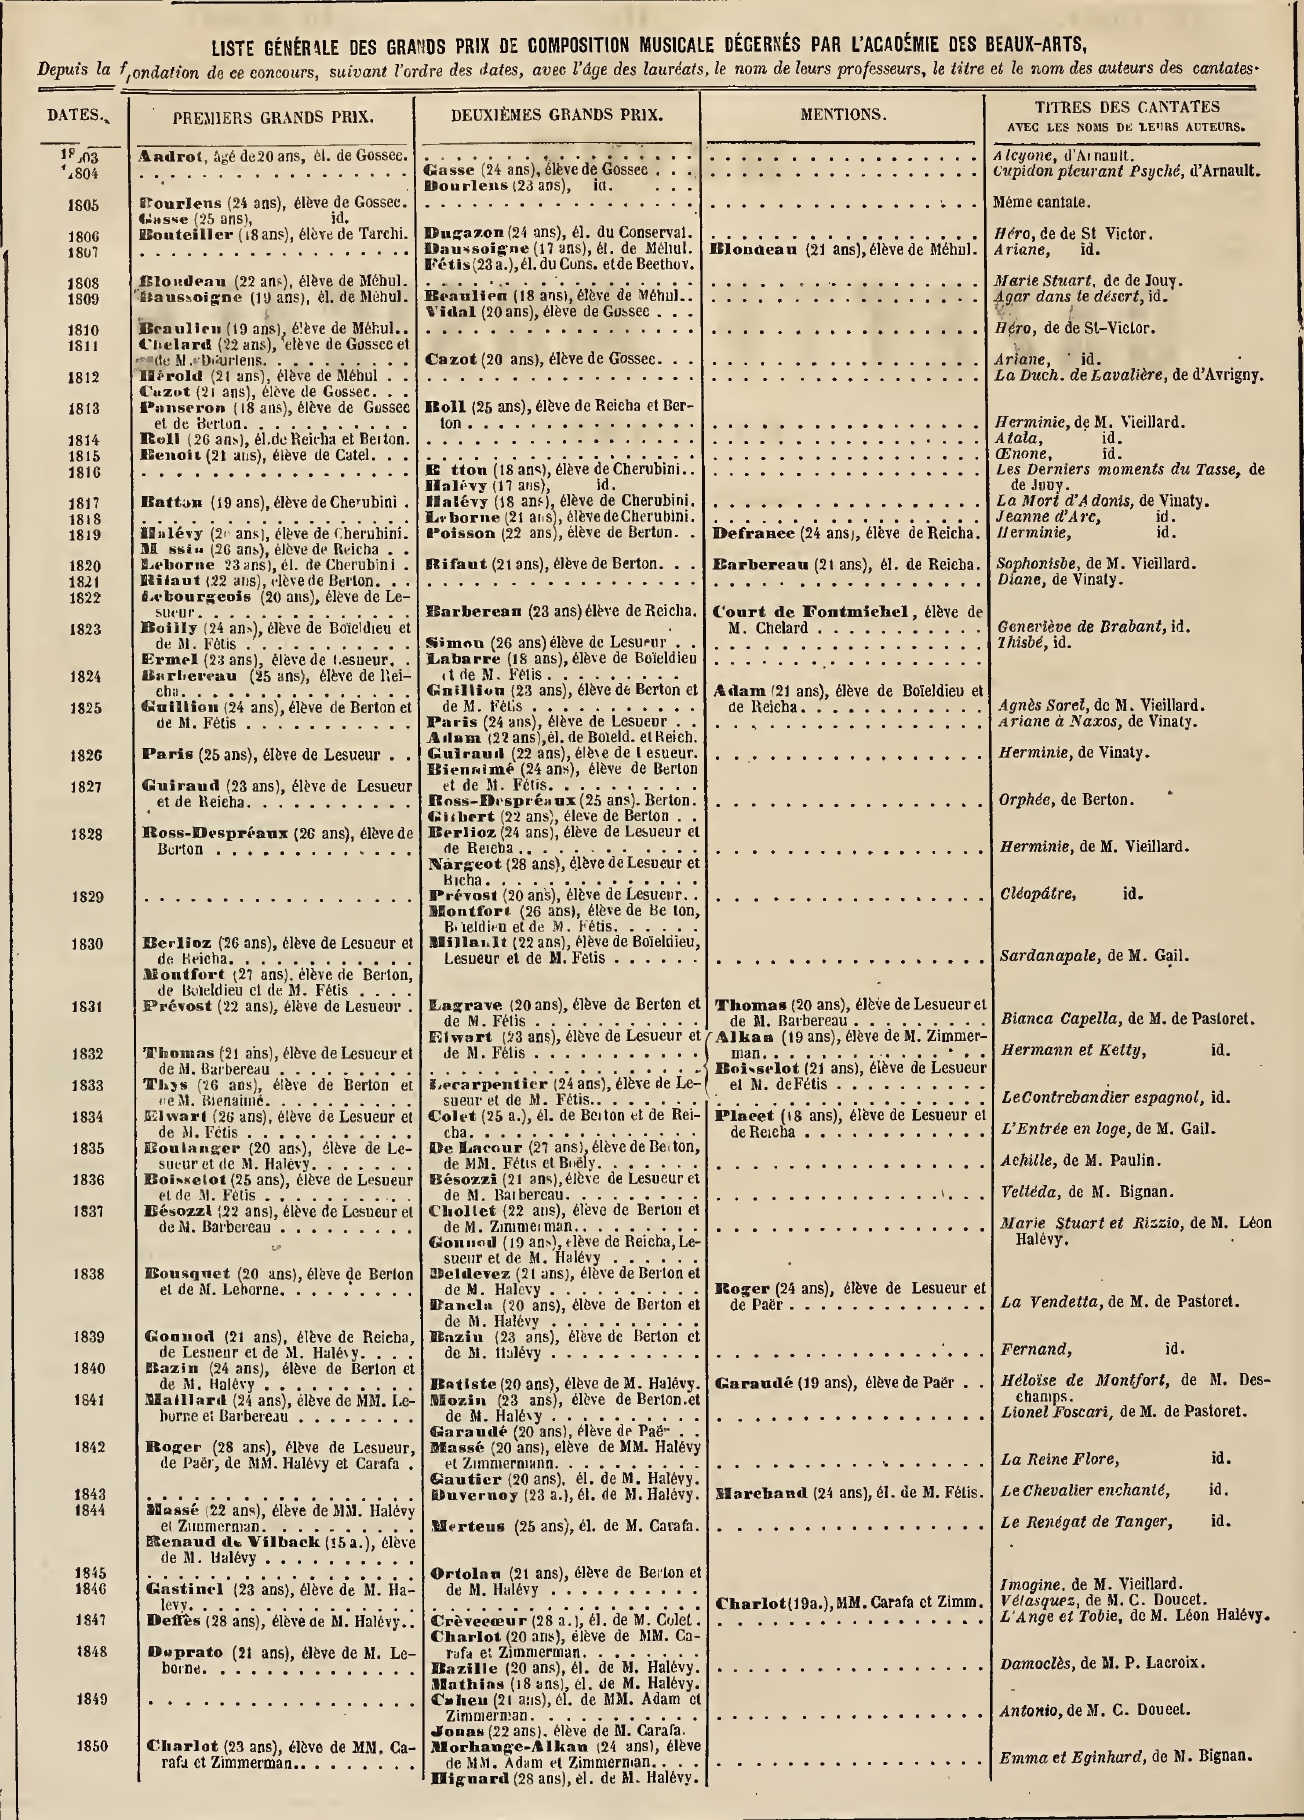 Liste des lauréats du prix de Rome 1803-1850